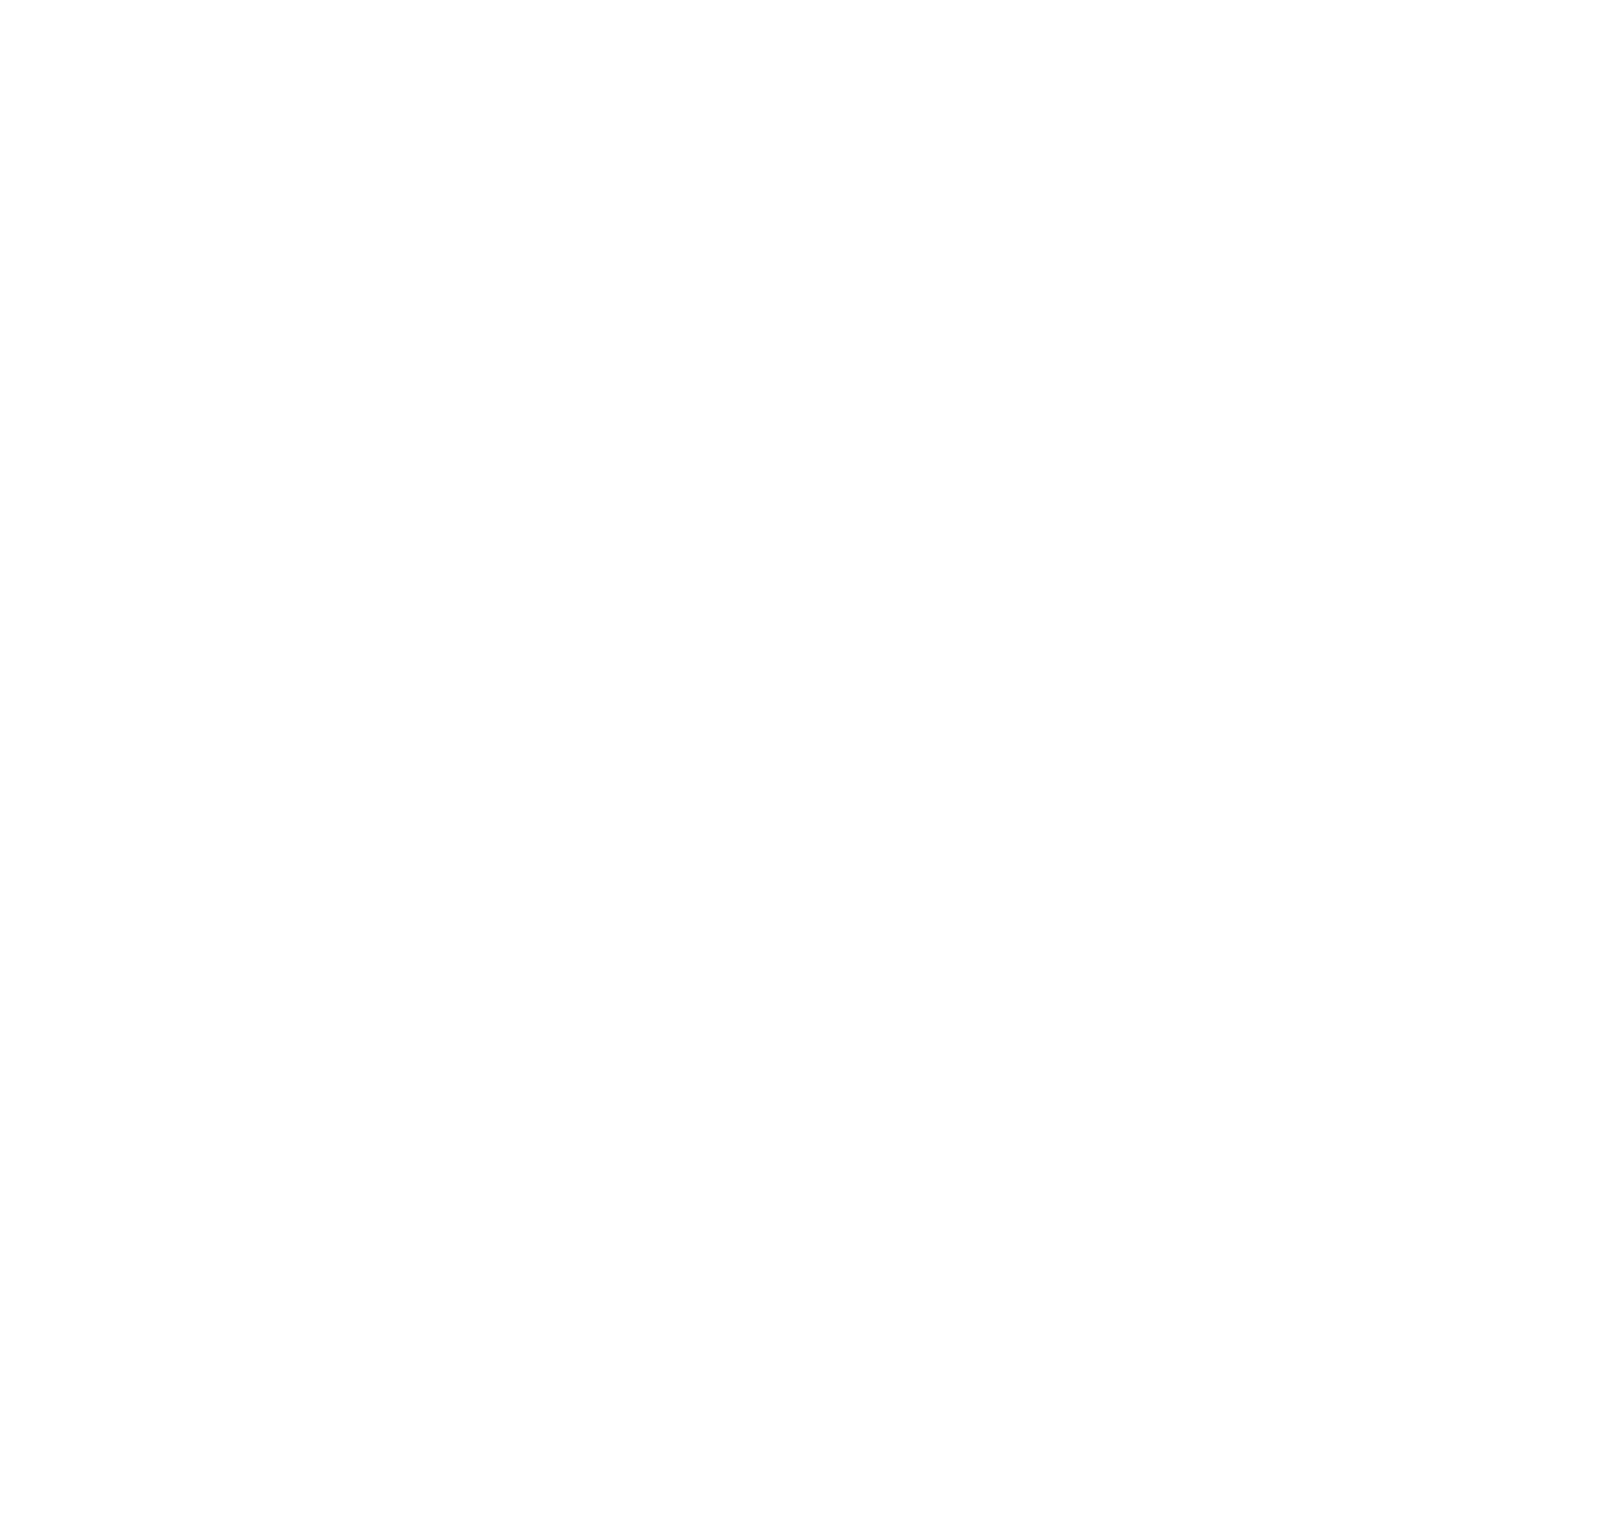 Similarweb logo pour fonds sombres (PNG transparent)